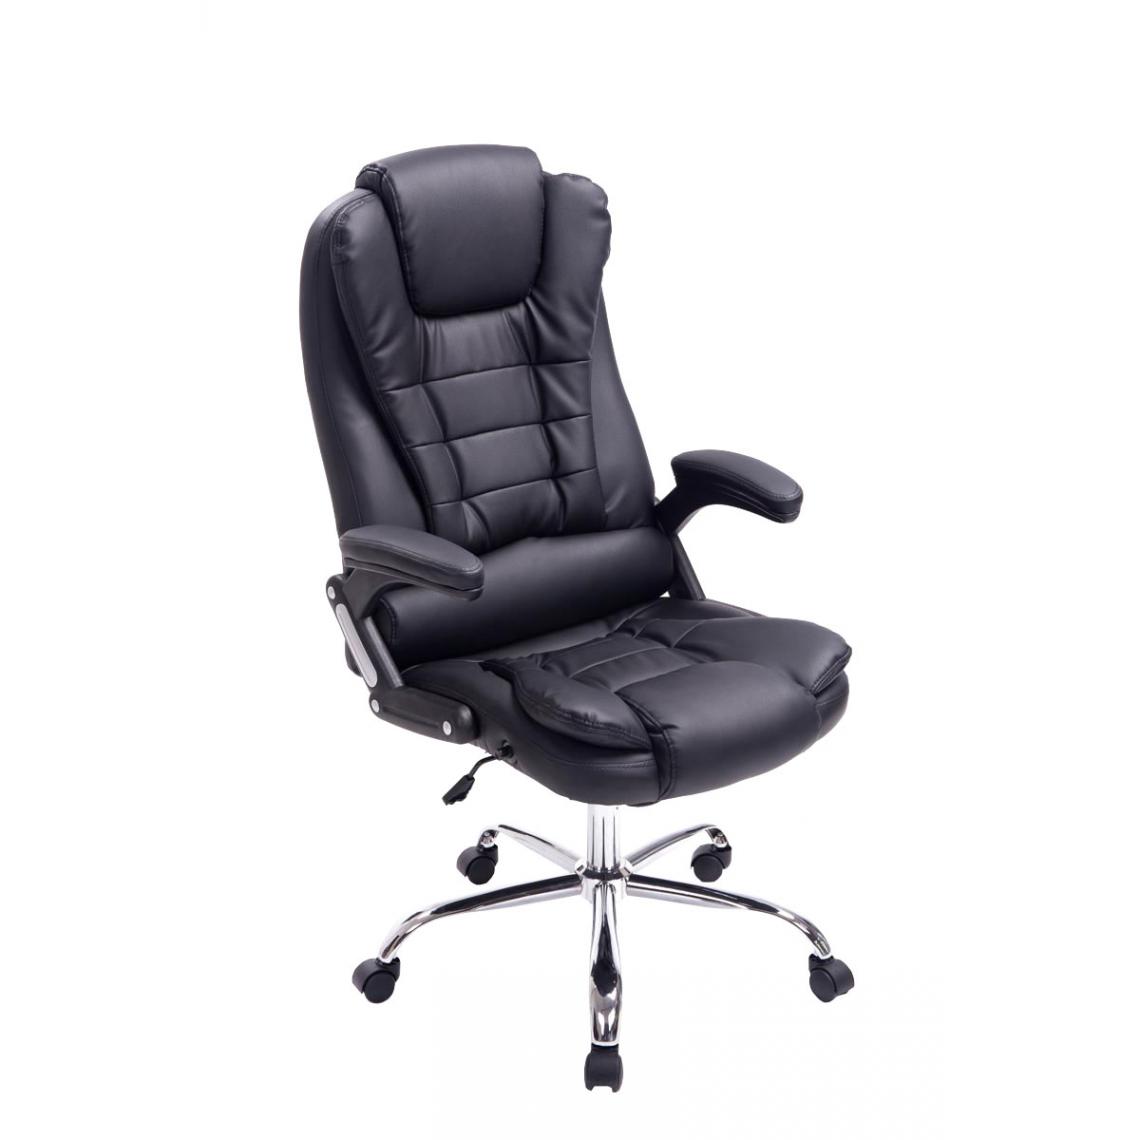 Icaverne - Superbe Chaise de bureau Manama couleur noir - Chaises